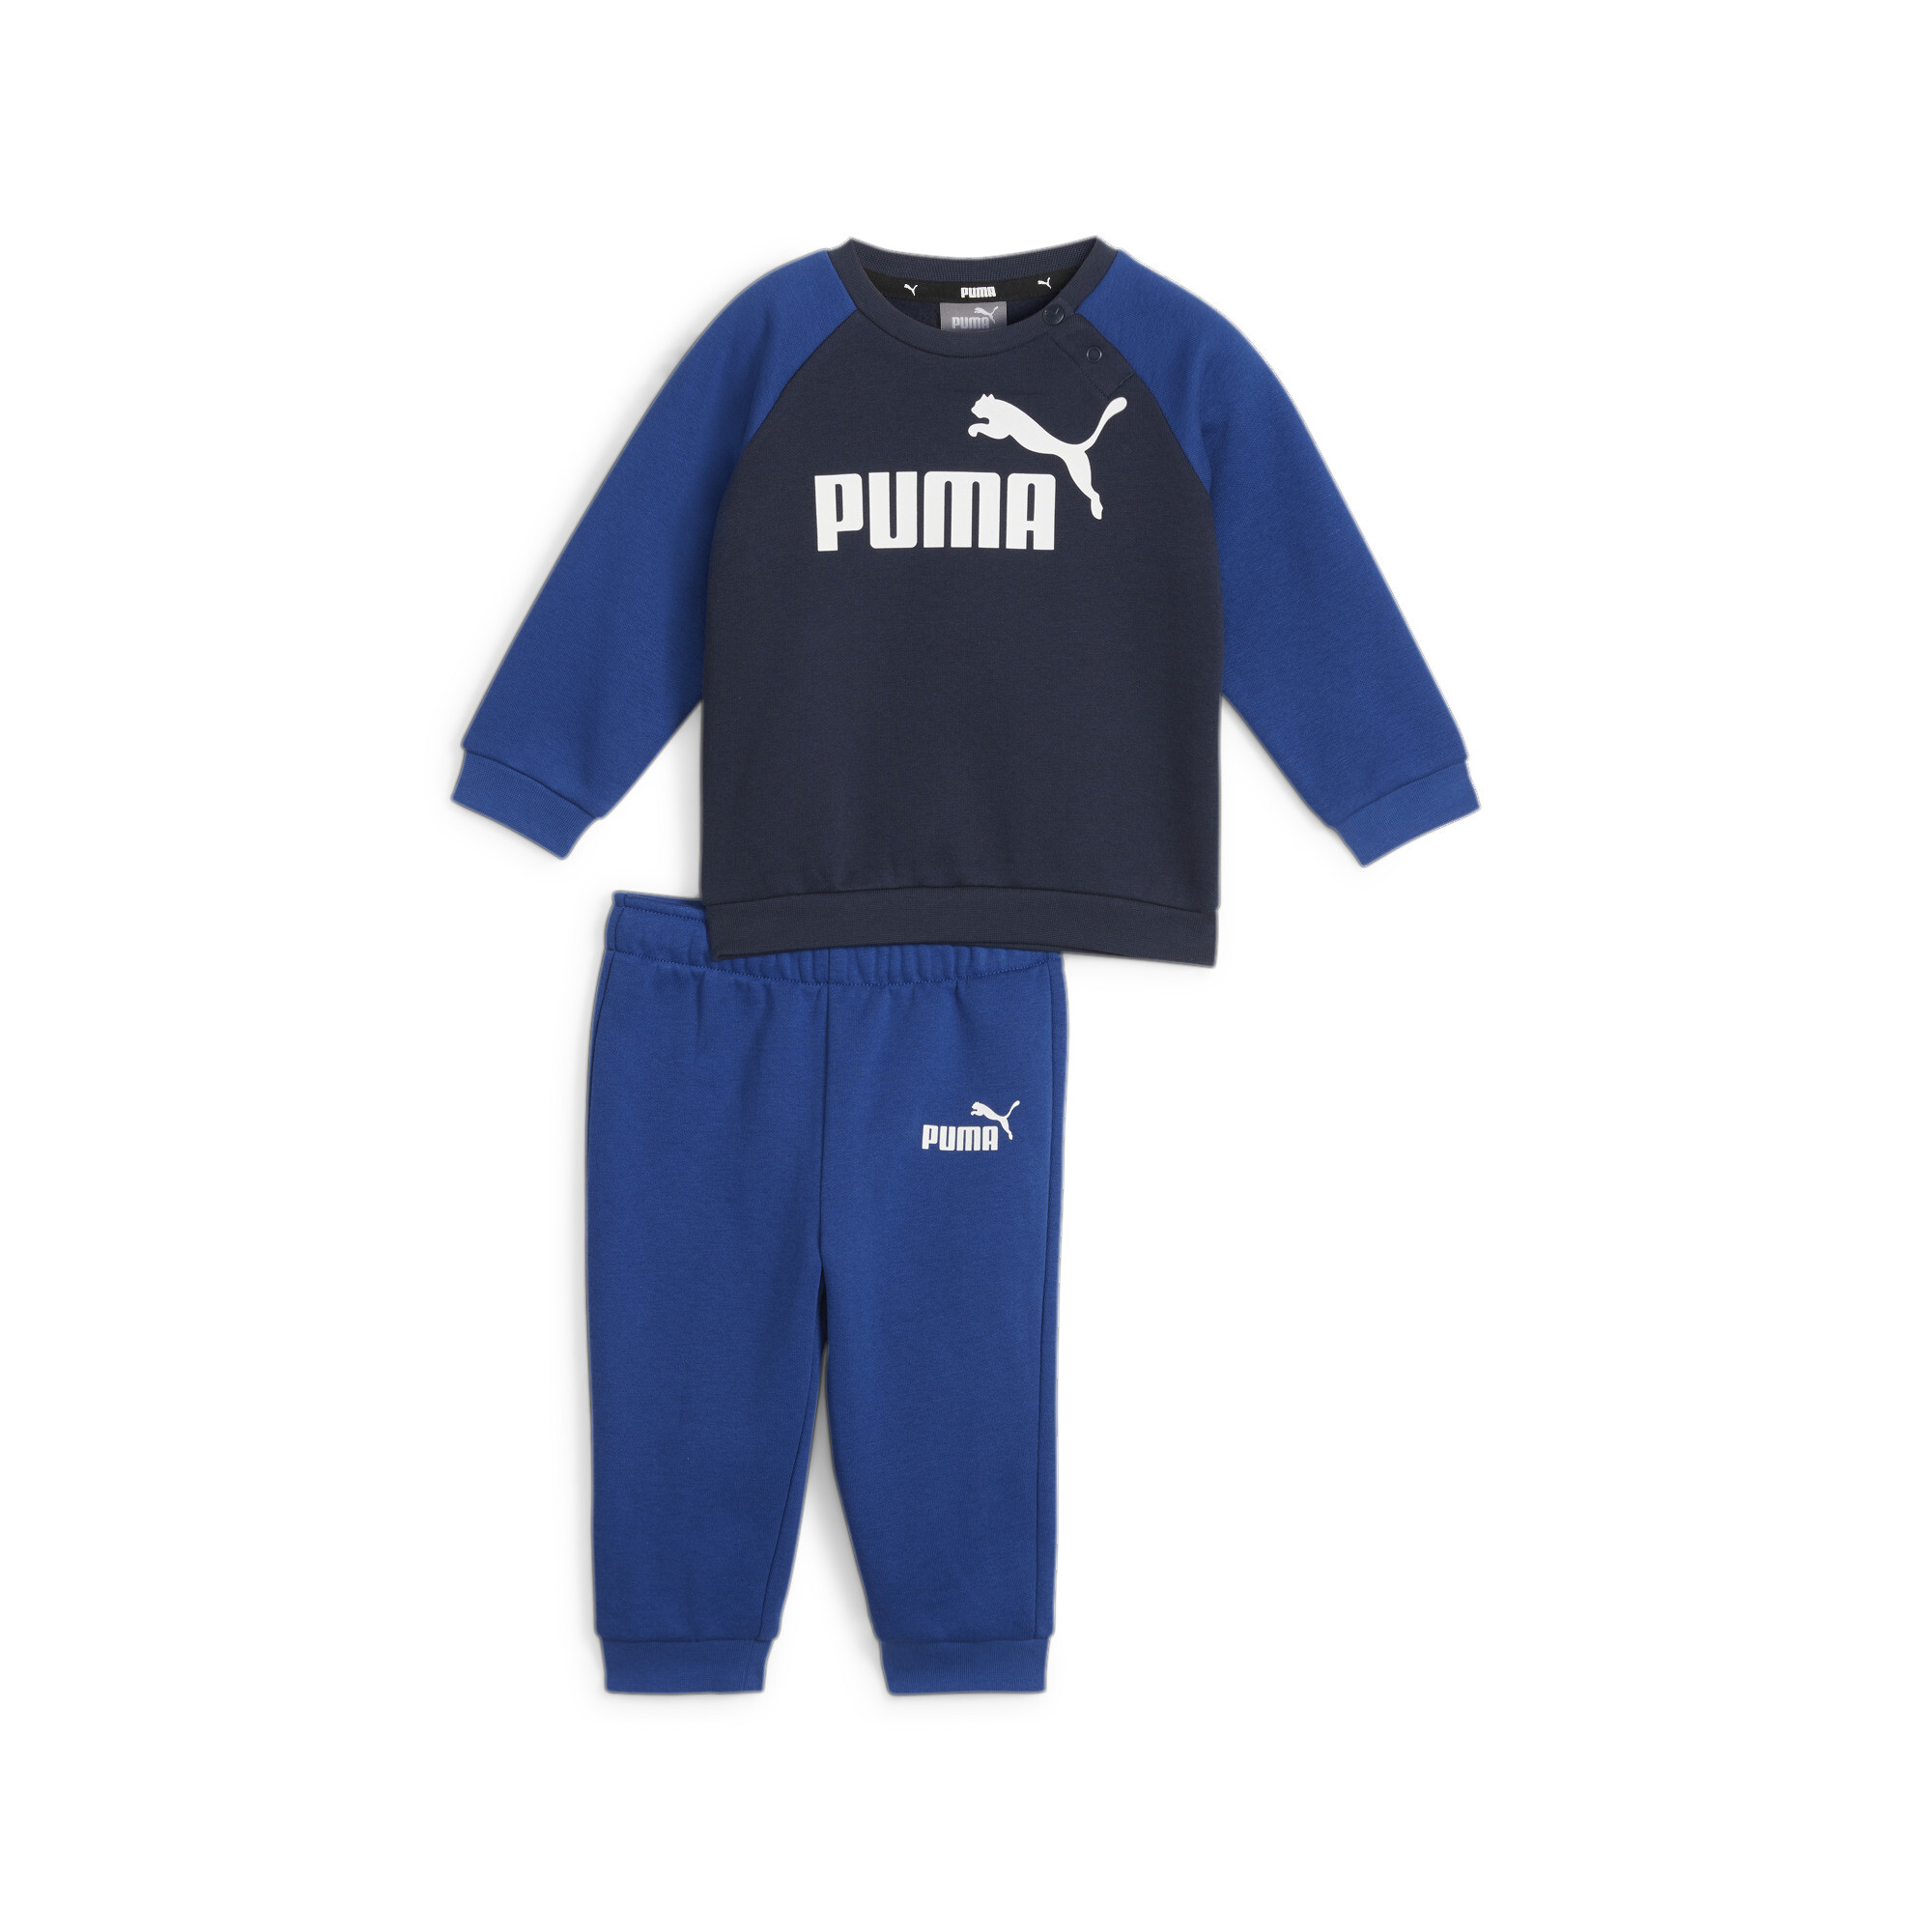 Puma Minicats Essentials Raglan Babies' Jogger Set, Blue, Size 4-6M, Clothing